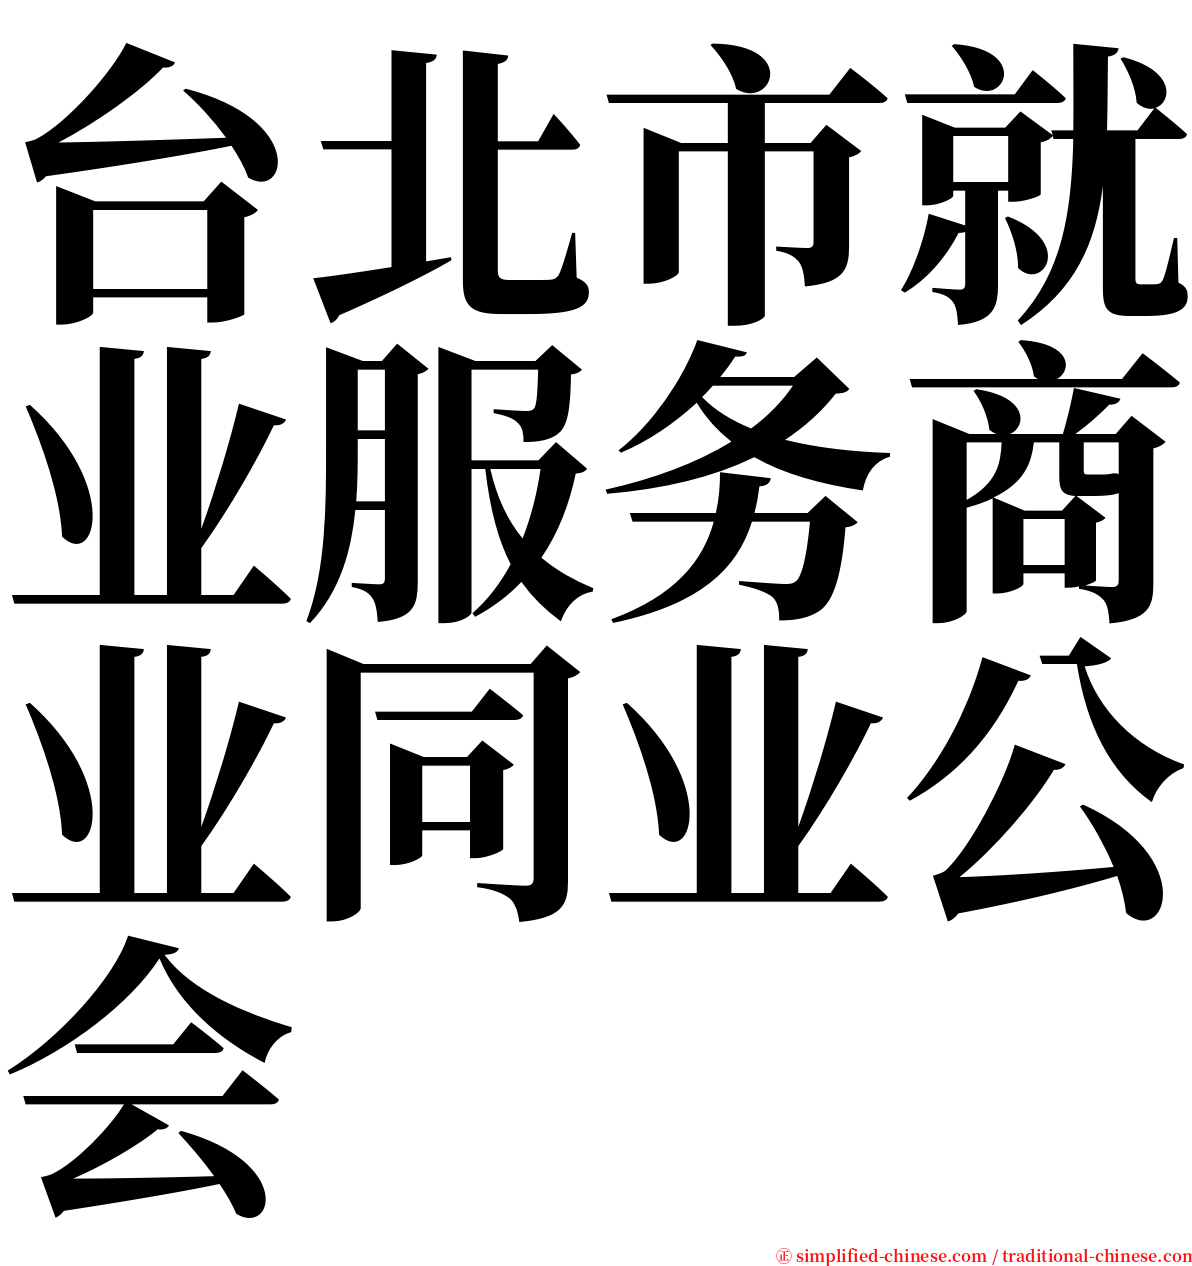 台北市就业服务商业同业公会 serif font